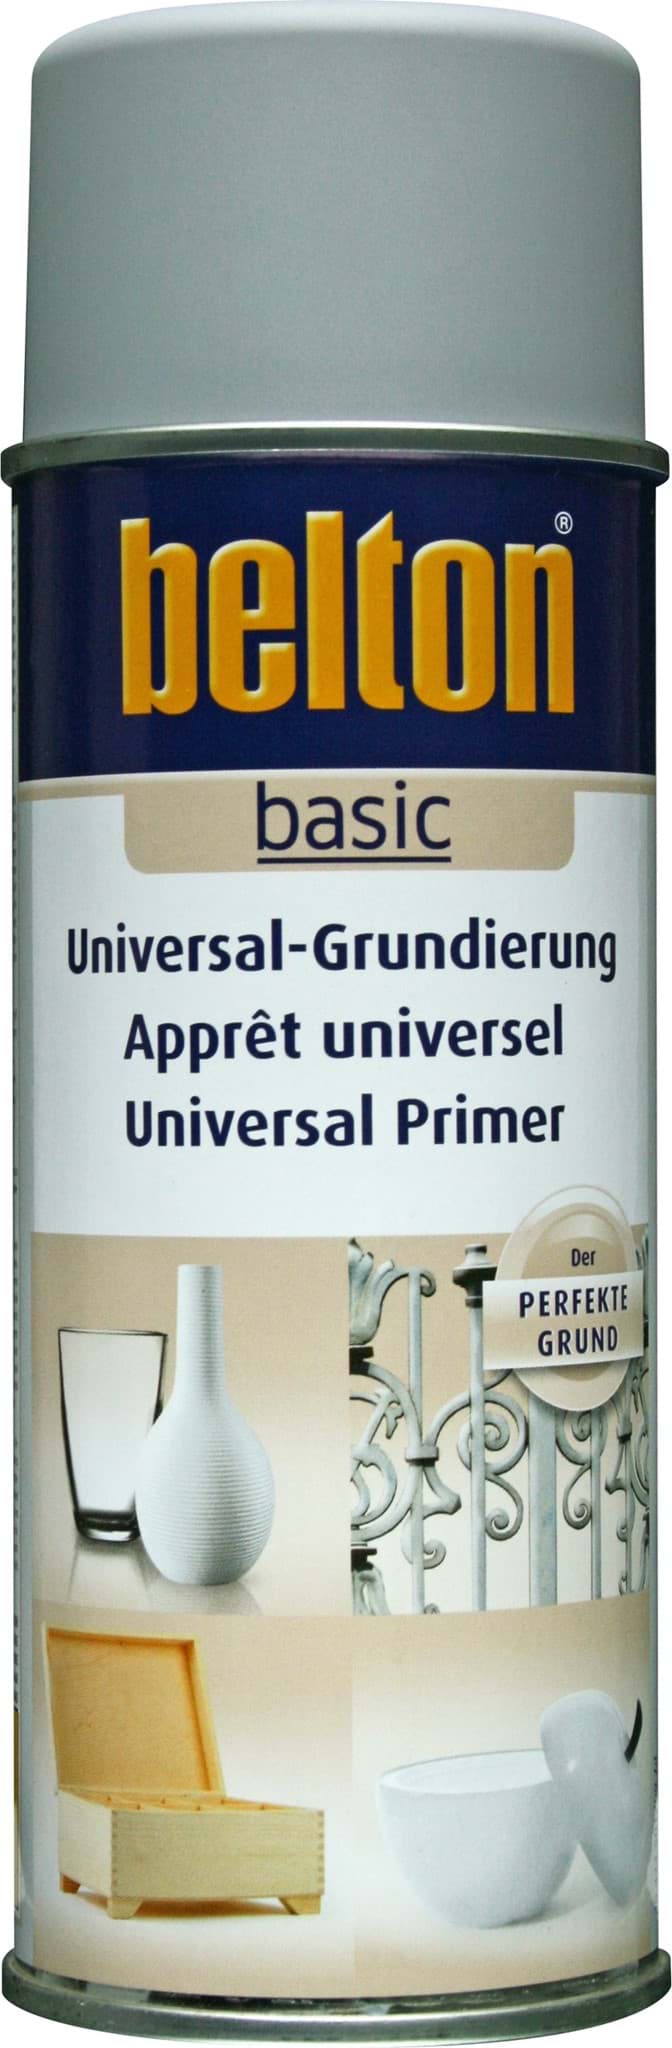 Belton basic Universal Grundierung grau resmi